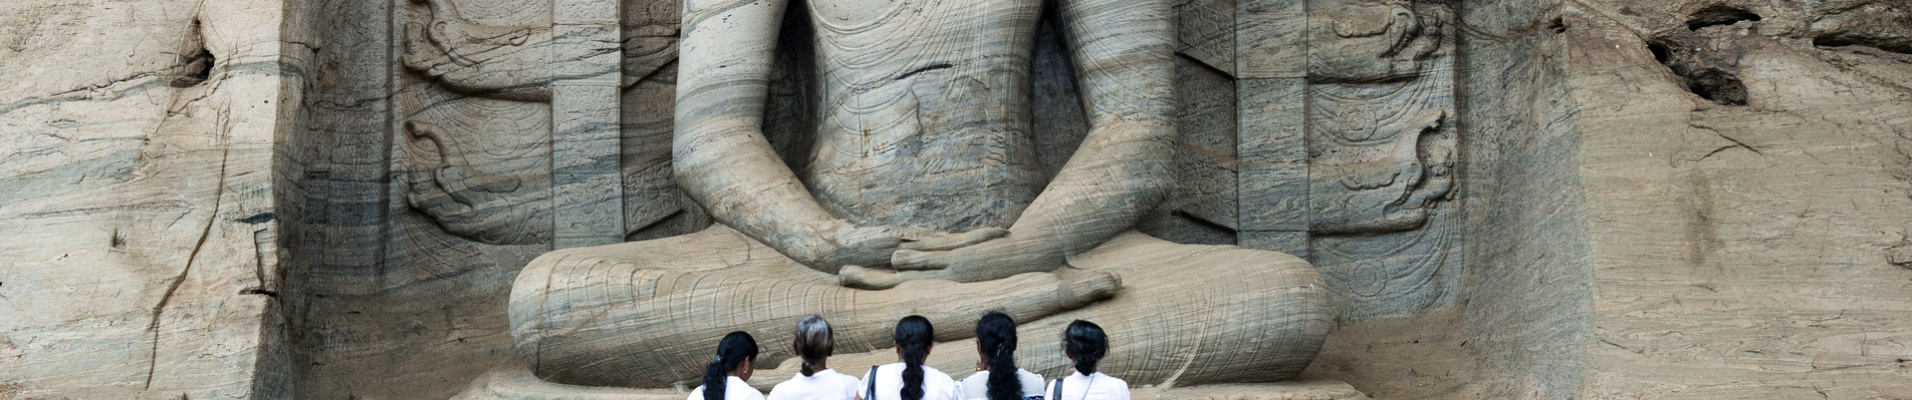 polonnaruwa statue bouddha